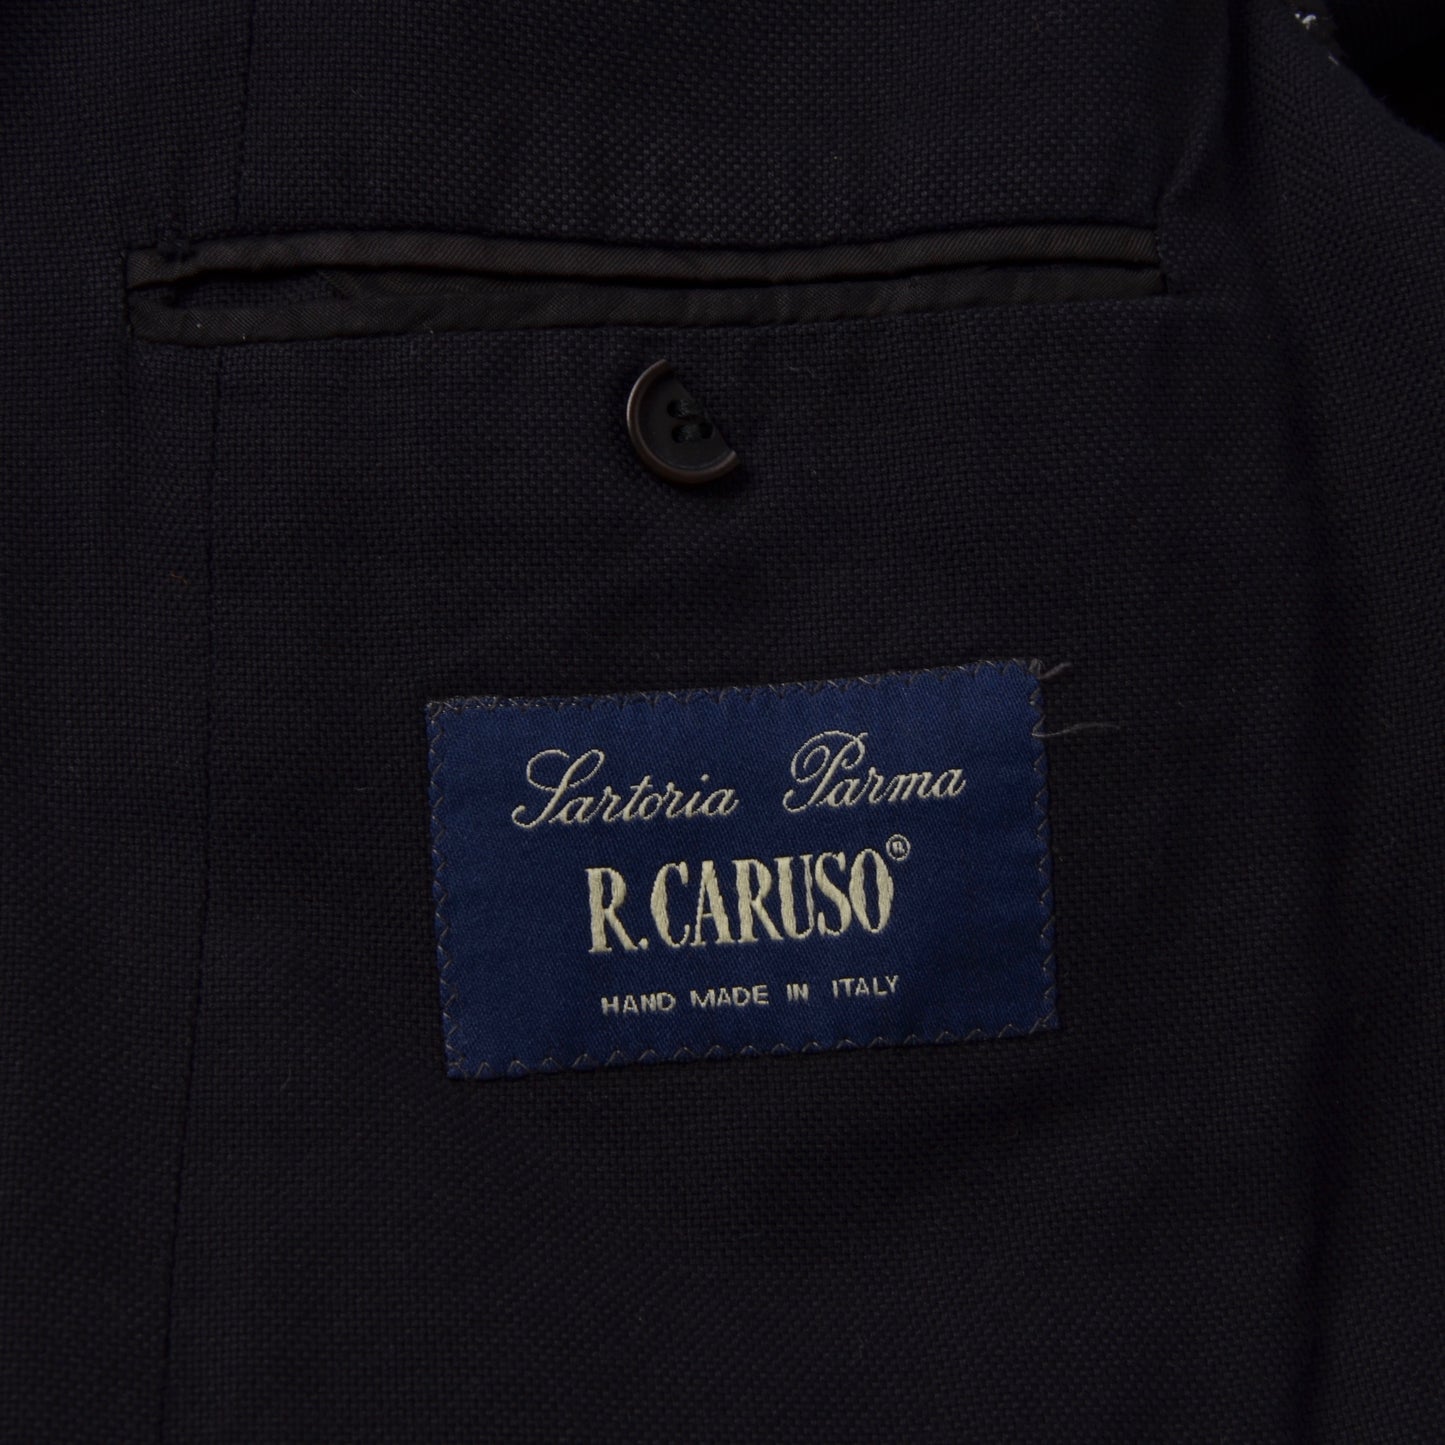 Raffaele Caruso Sartoria Parma Jacket - Navy